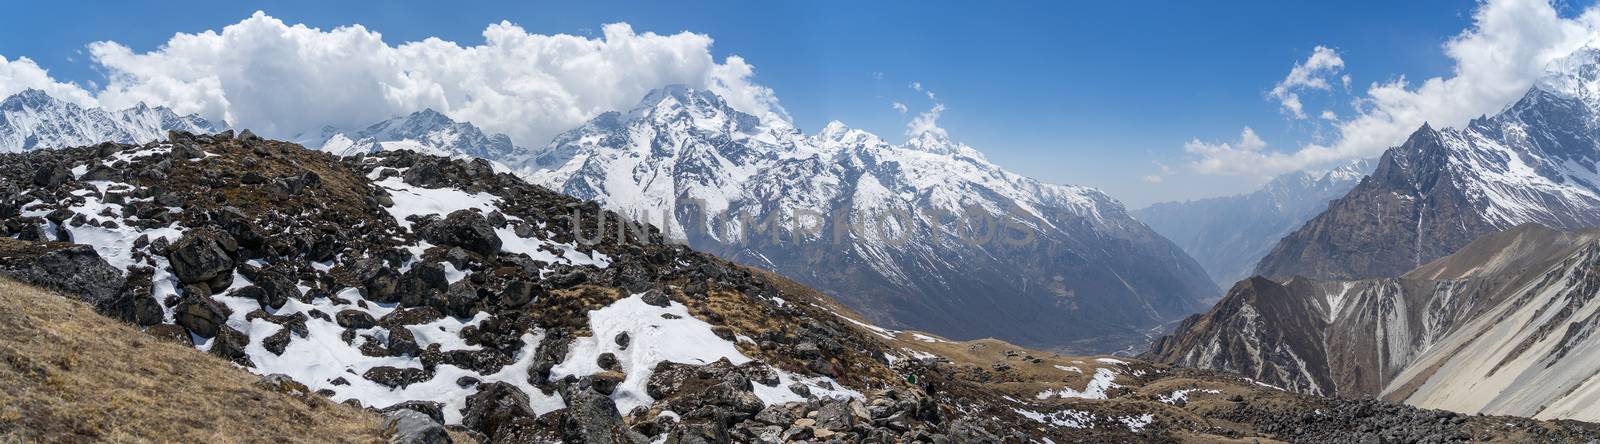 Mountain landscape in Nepal by javax